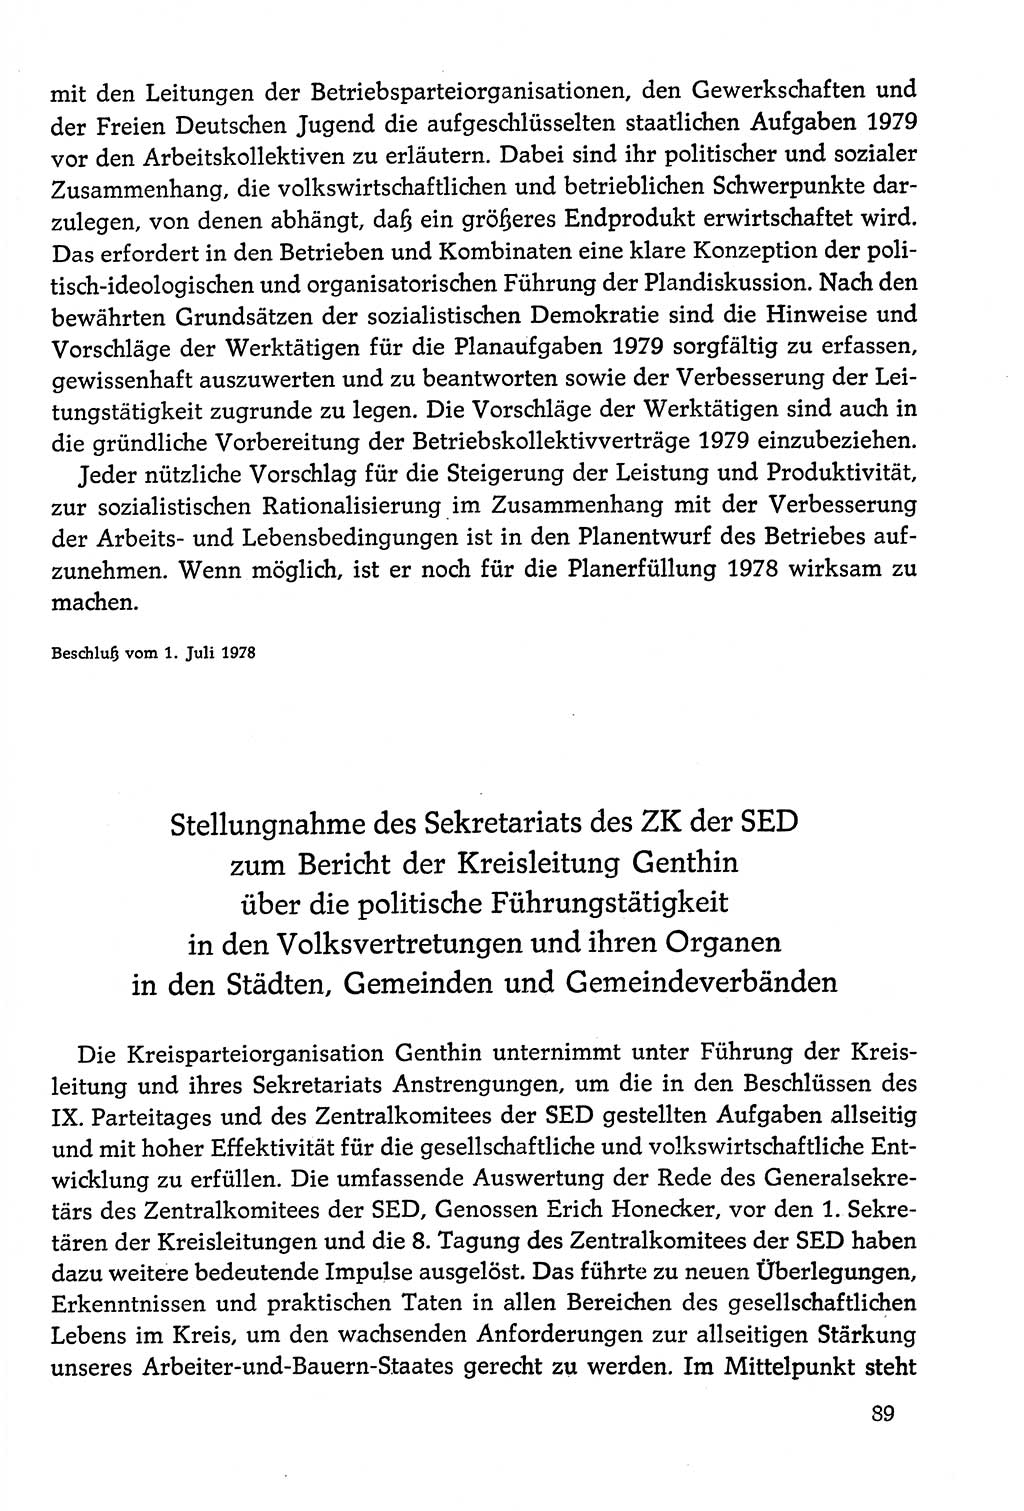 Dokumente der Sozialistischen Einheitspartei Deutschlands (SED) [Deutsche Demokratische Republik (DDR)] 1978-1979, Seite 89 (Dok. SED DDR 1978-1979, S. 89)